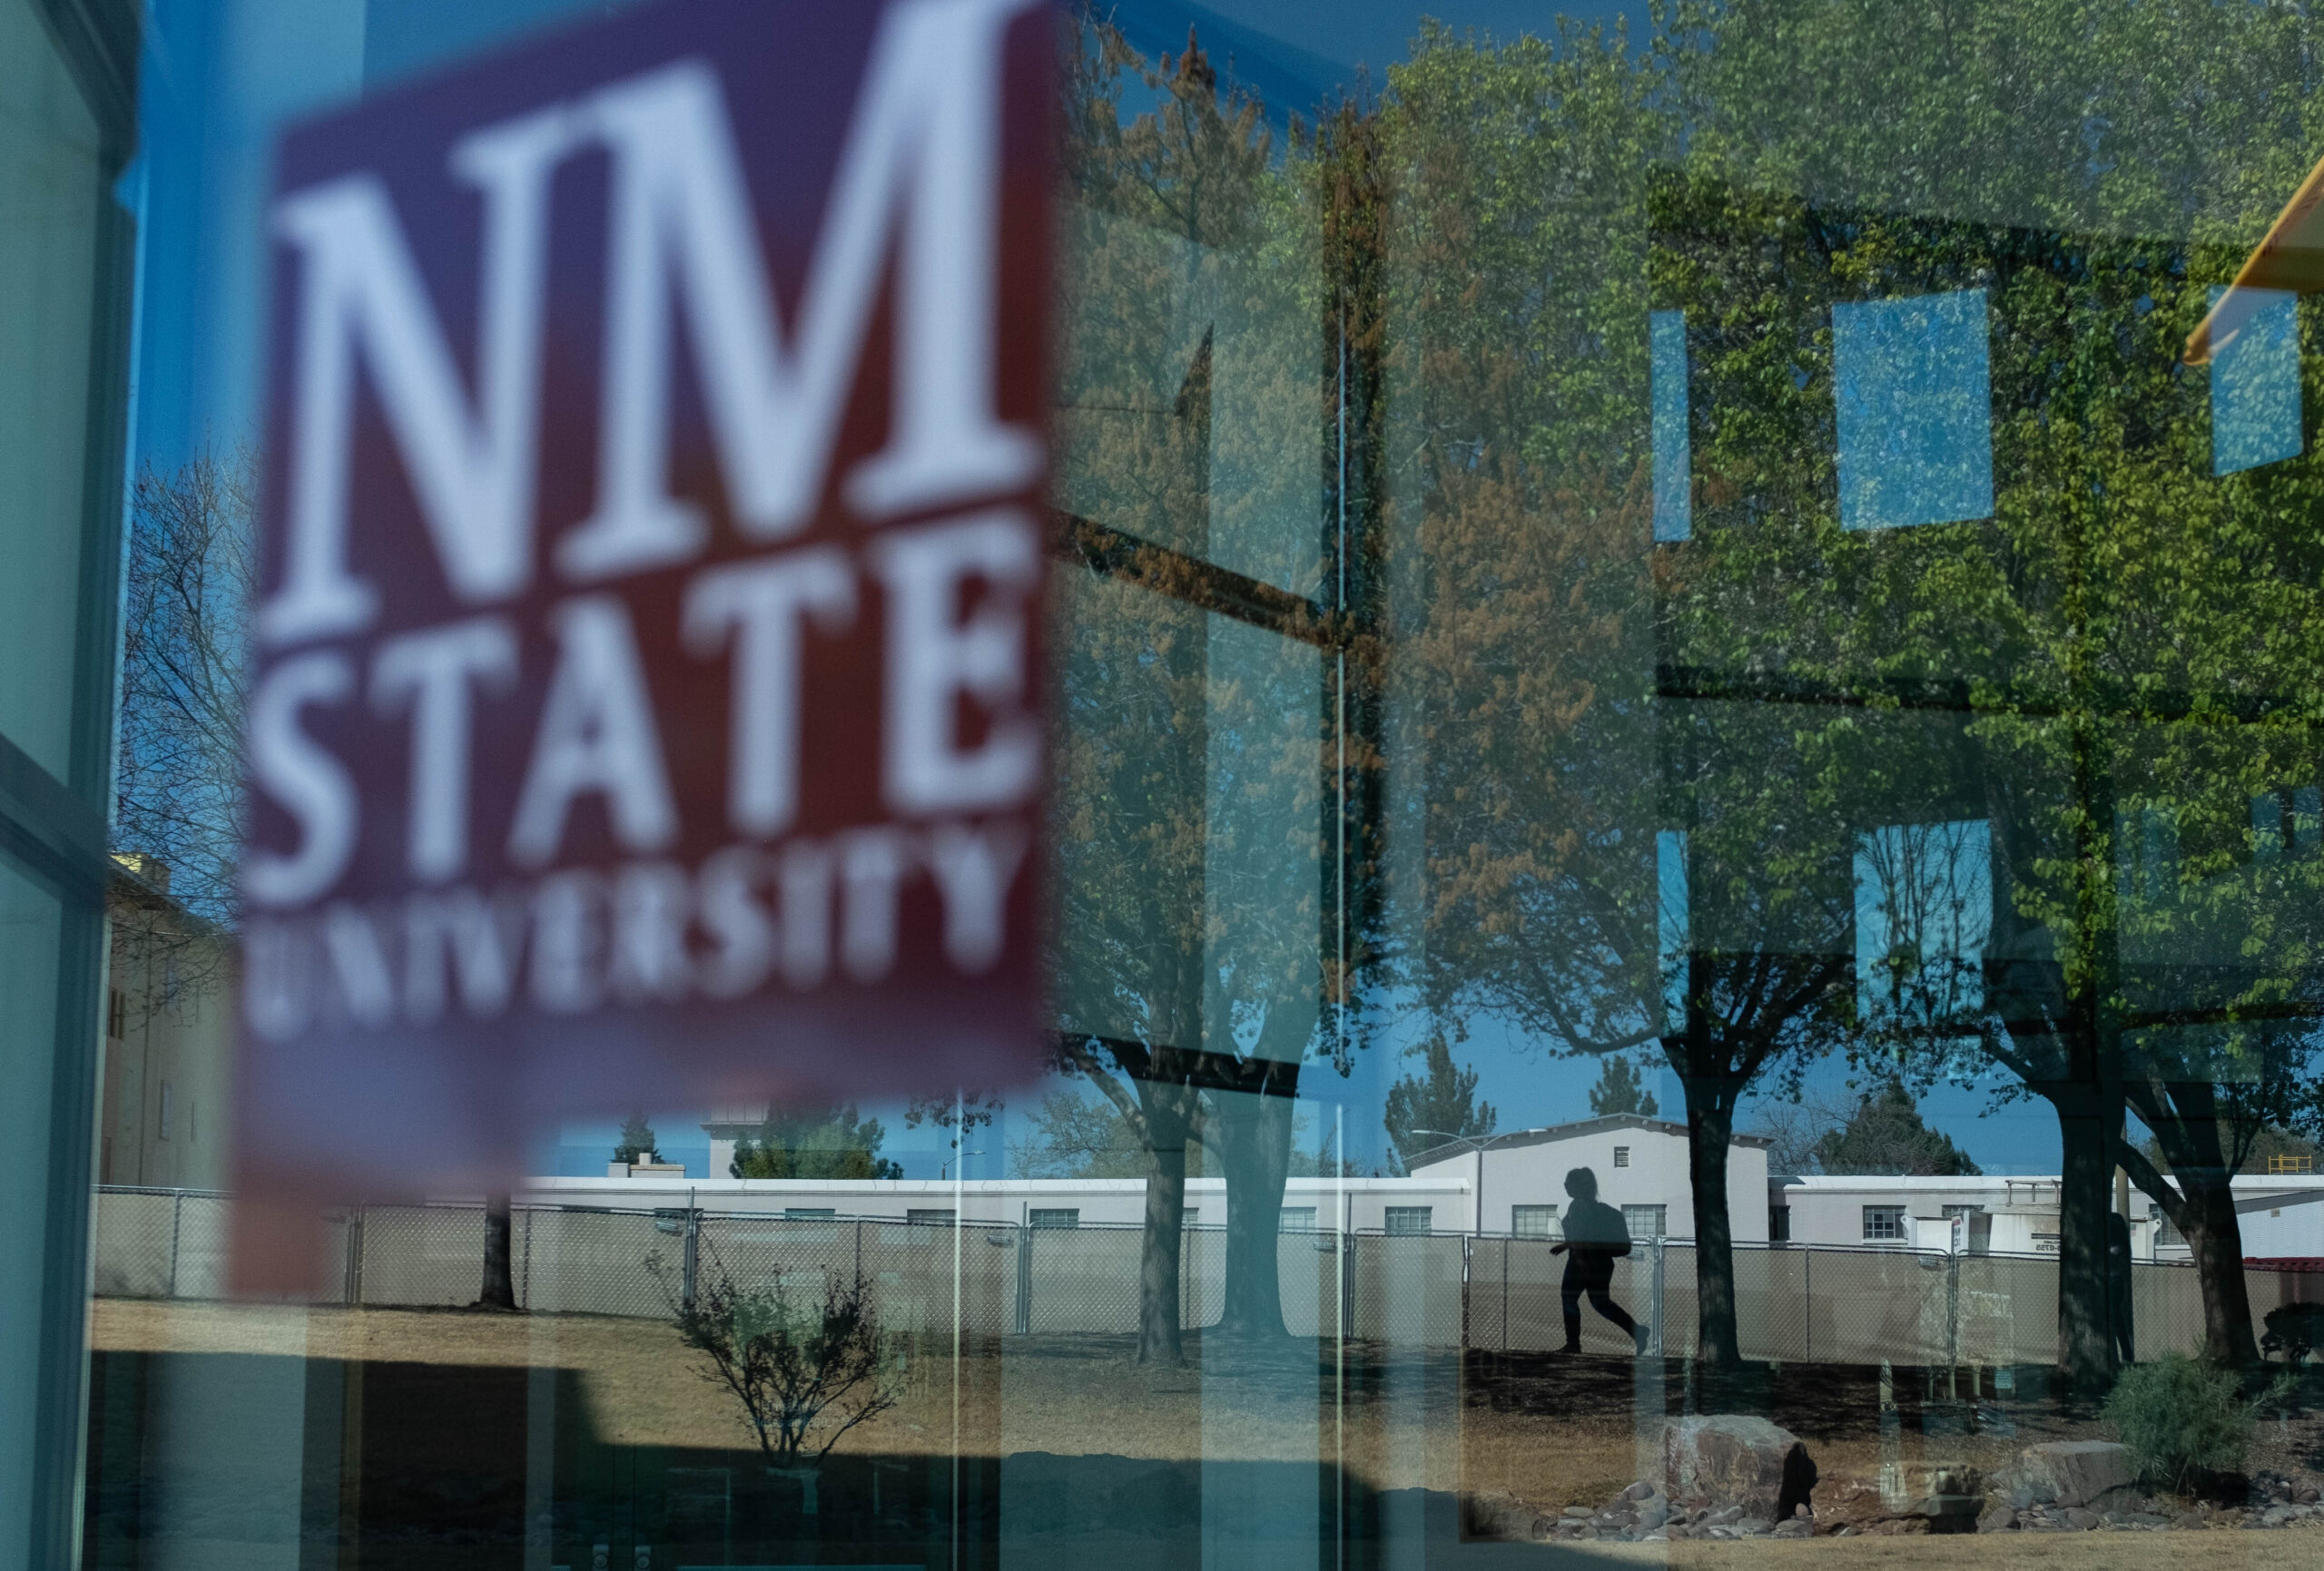 NMSU Main Campus, 2019, 2020, (NMSU photo by Josh Bachman)